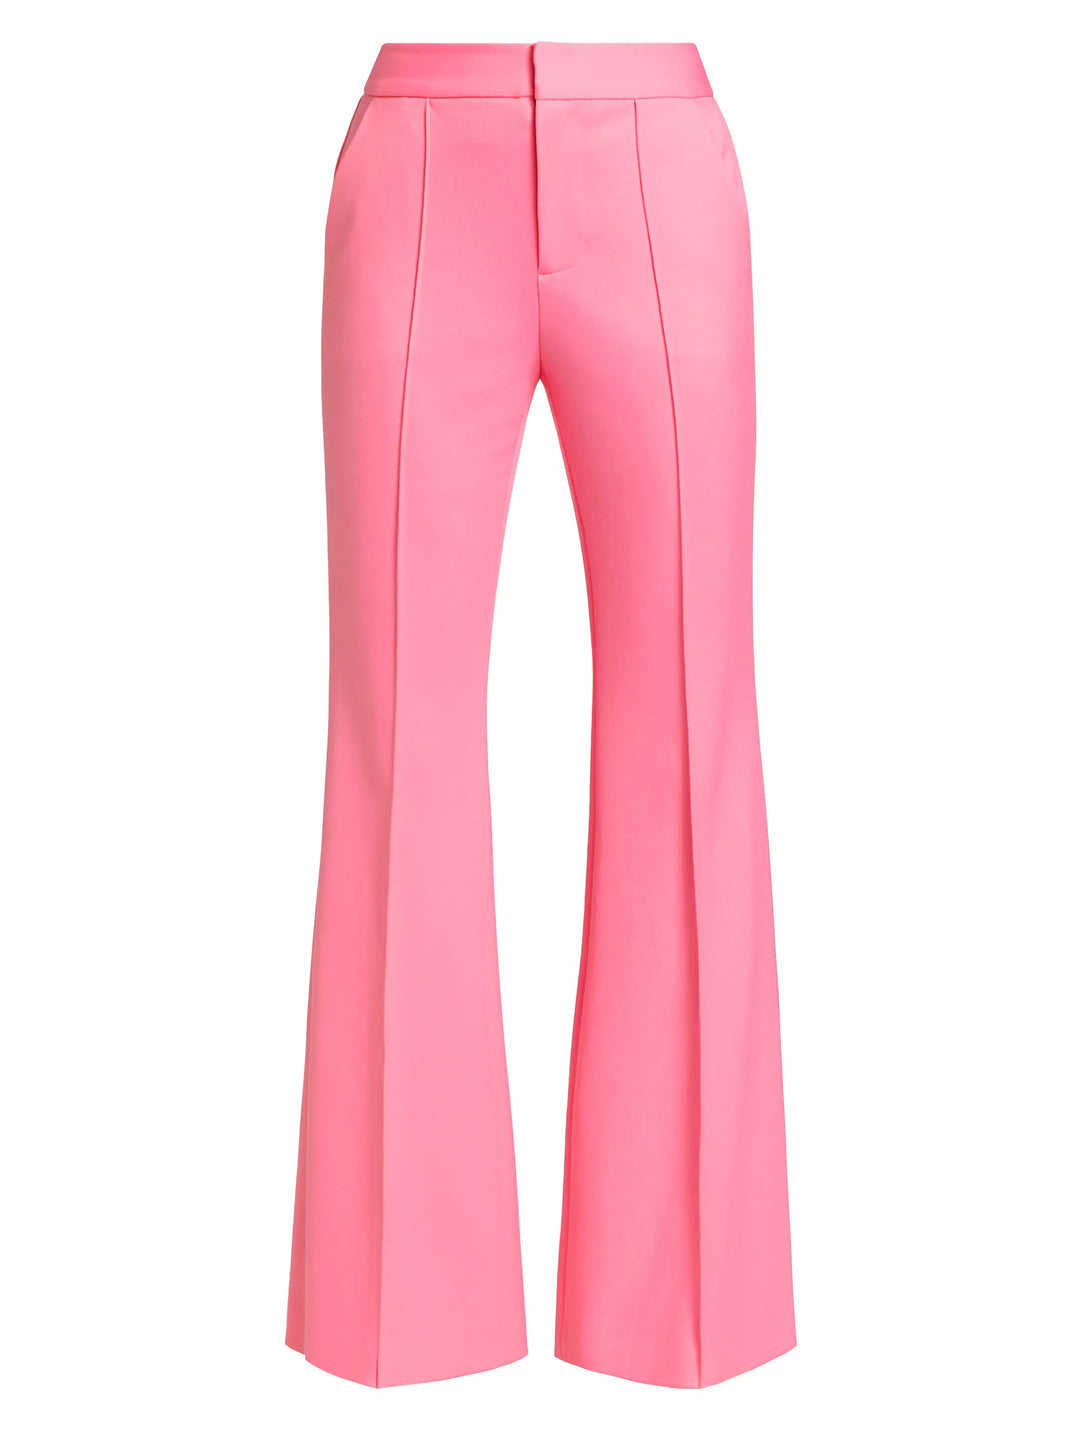 Danette Mid-Rise Slit Trouser in Cherry Blossom